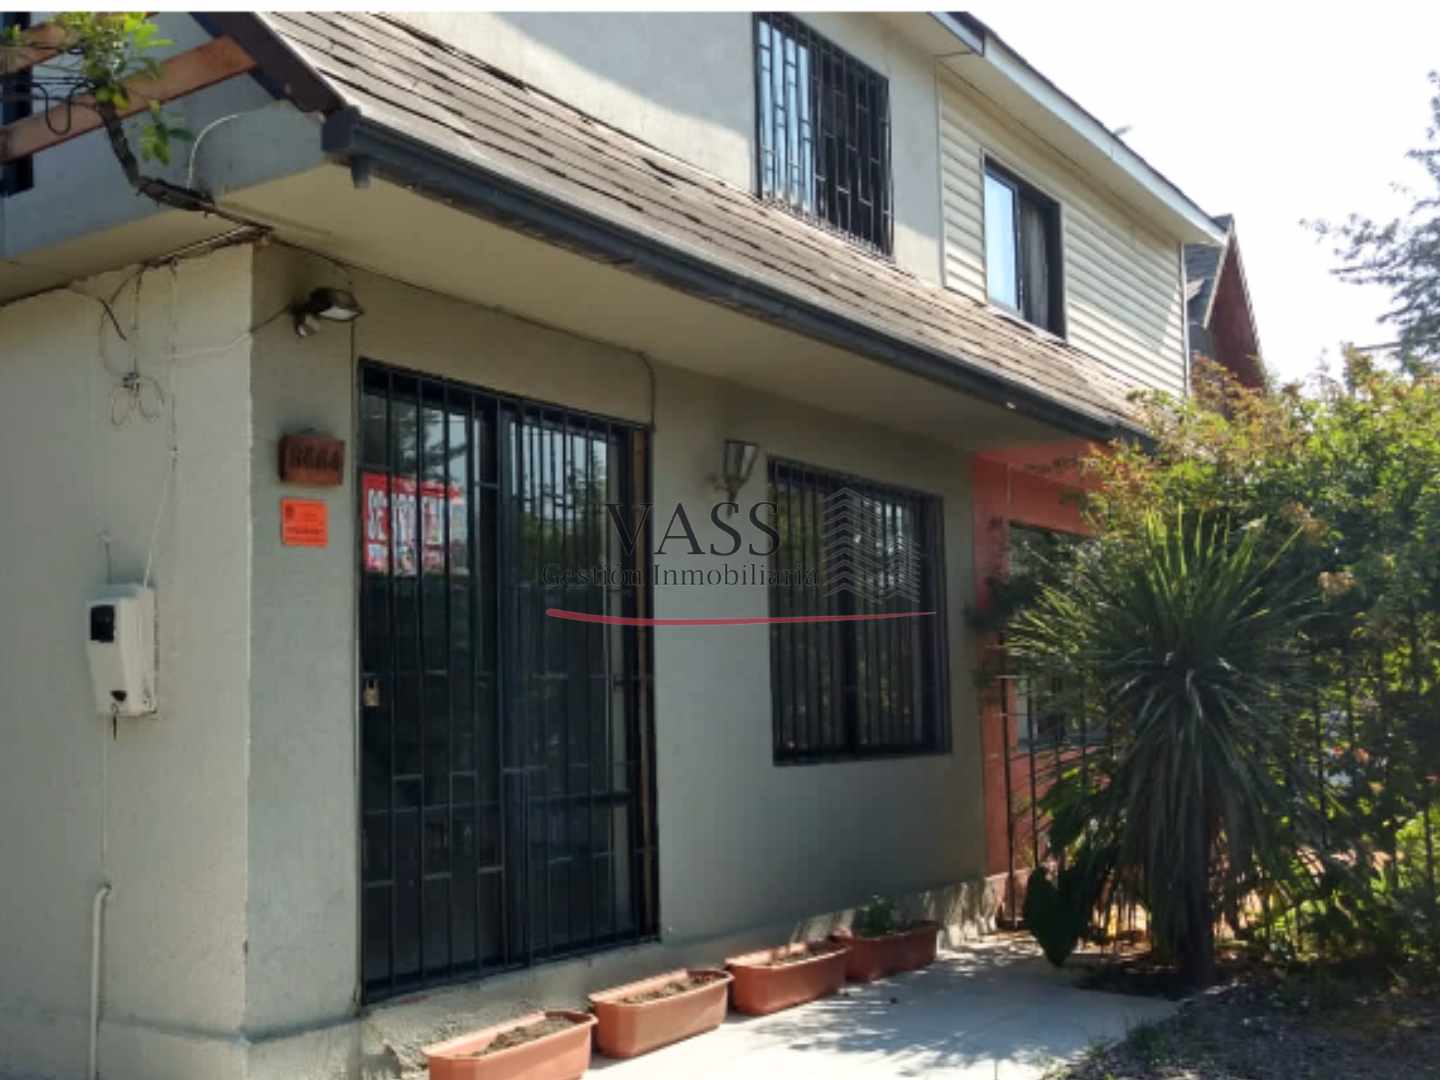 VASS Gestión Inmobiliaria vende casa 4D 2B en Las Condes, Santiago